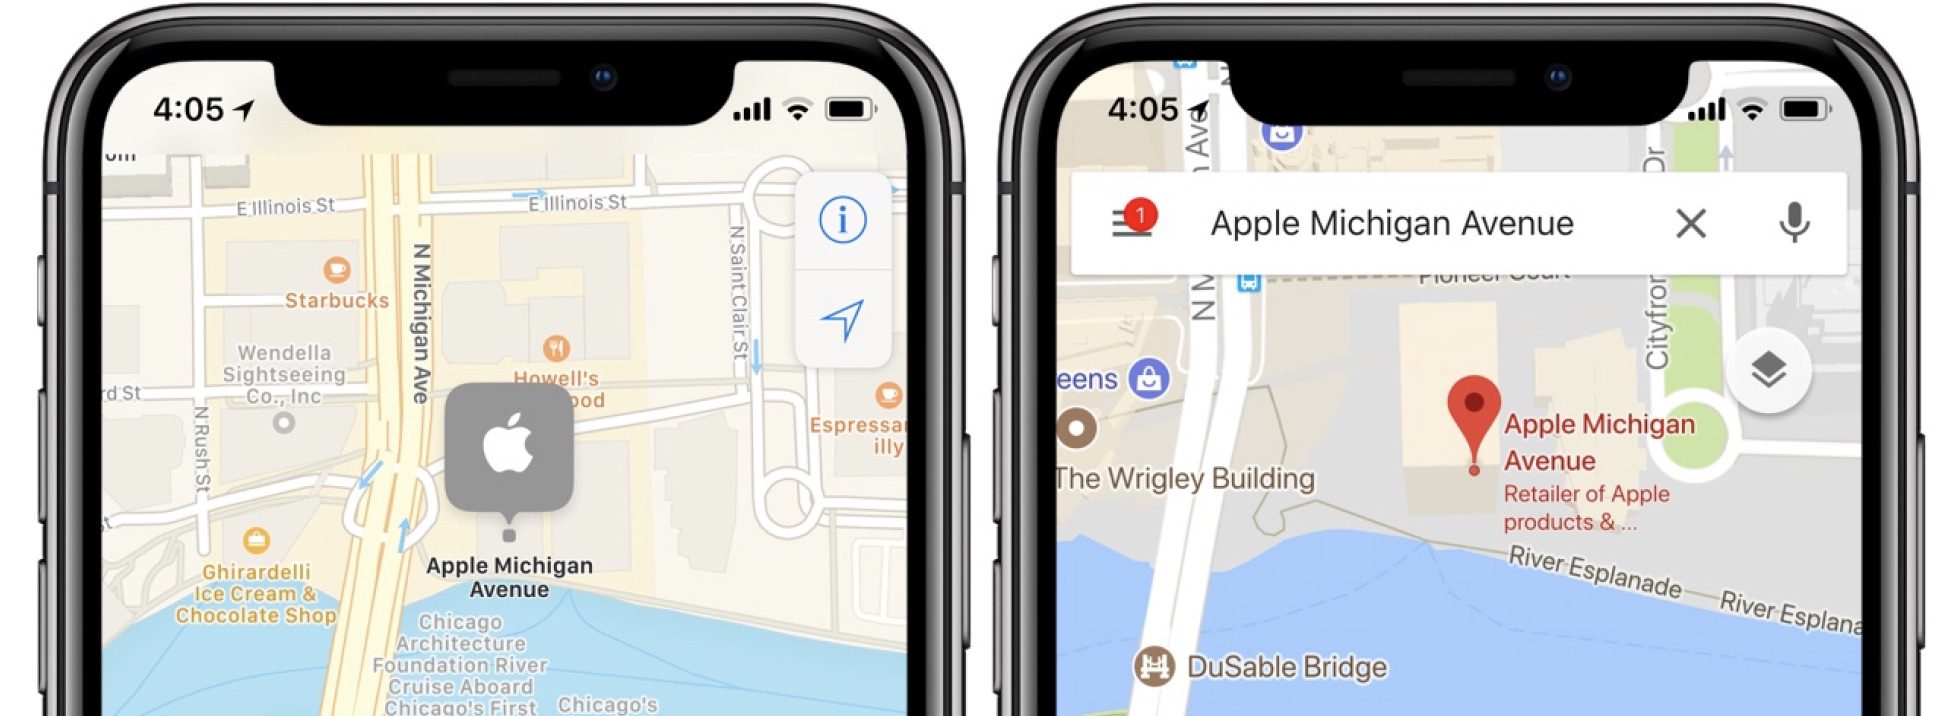 Гугл карты айфон. Apple Maps. Отображение организации на АПЛ картах. Apple и Google на карте.